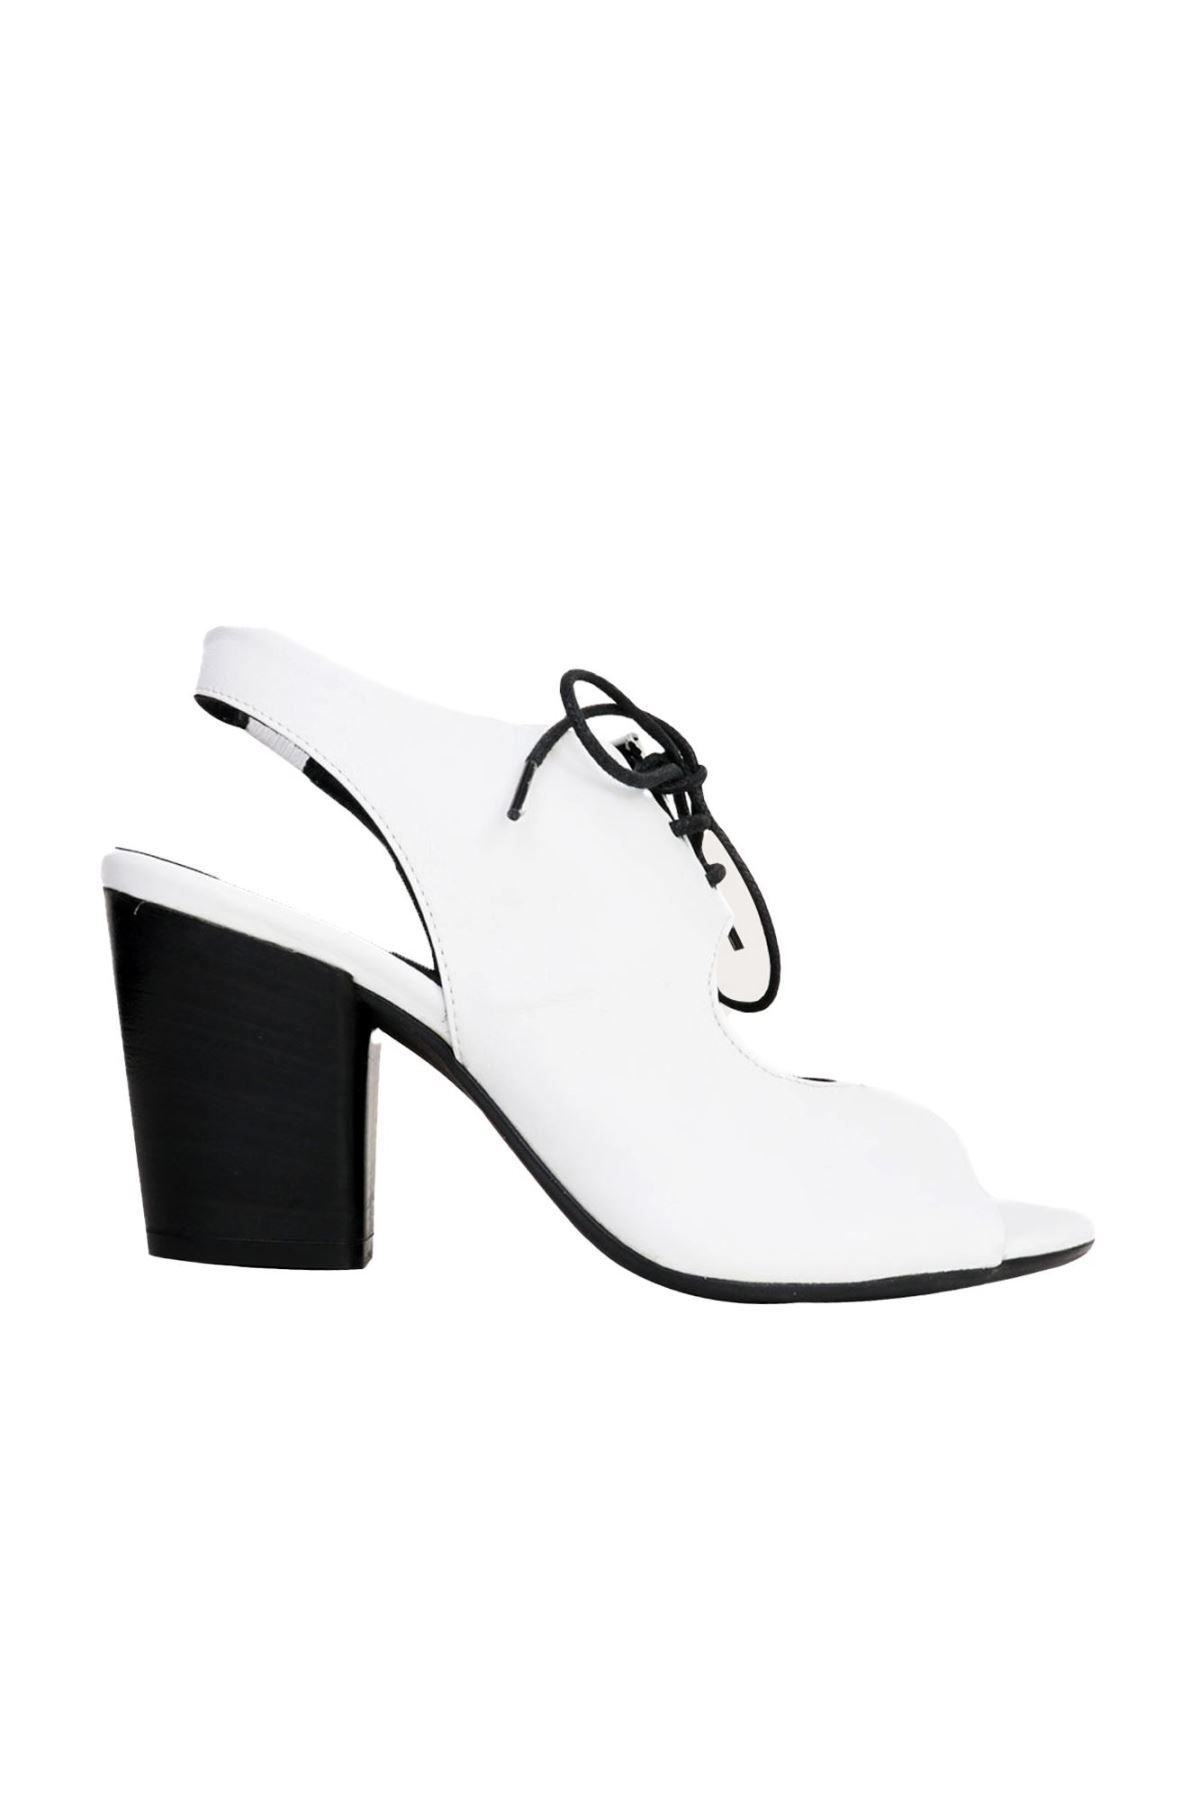 BUENO Shoes Beyaz Deri Kadın Topuklu Sandalet